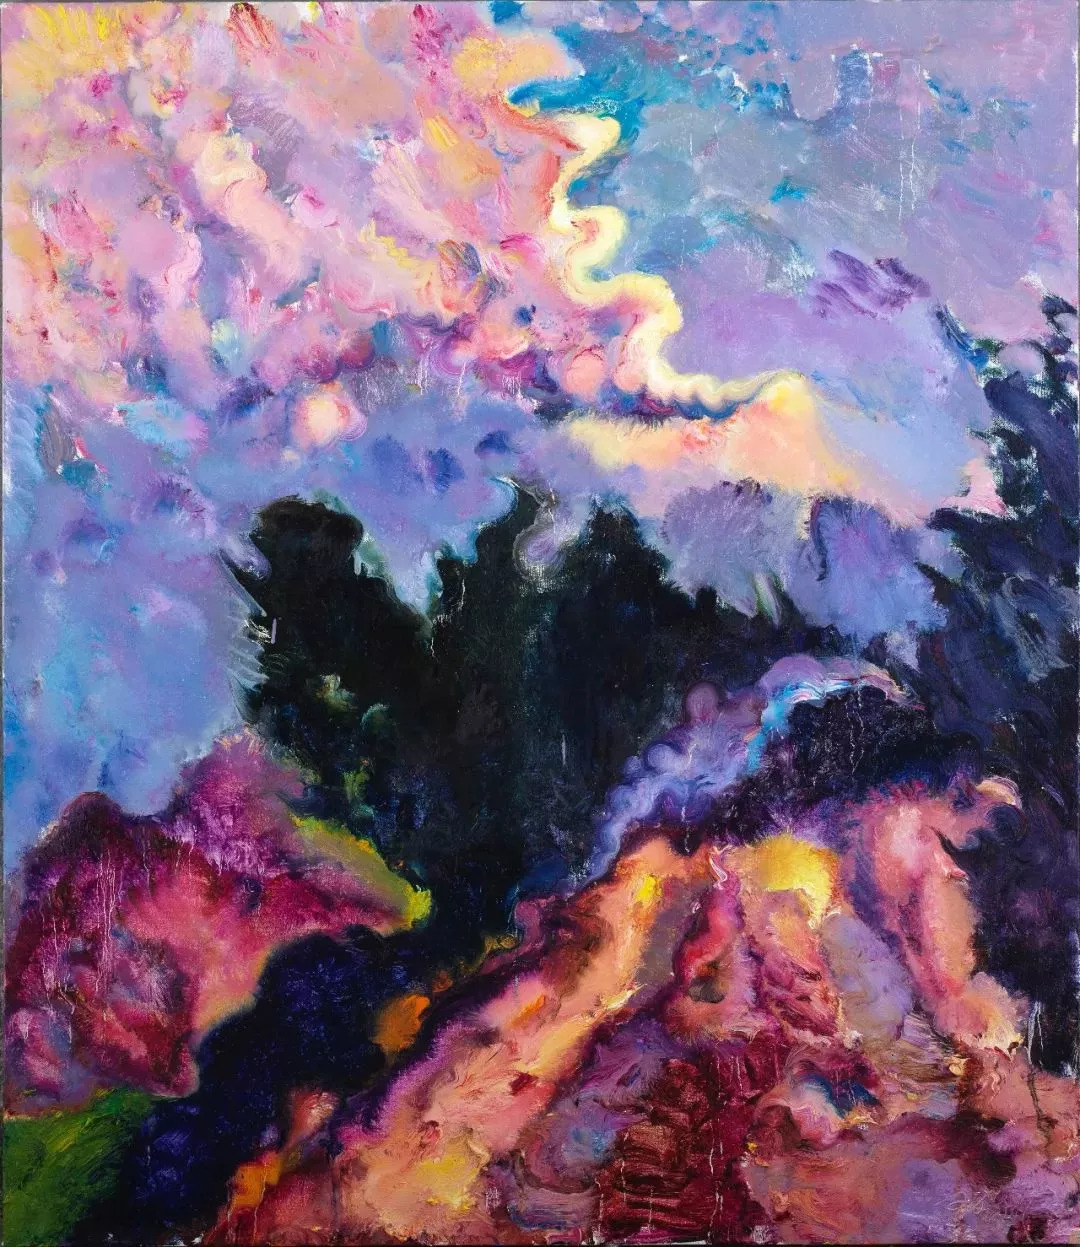 云怒石开 cloud fury and stone open 布面油画 oil on canvas 150x1